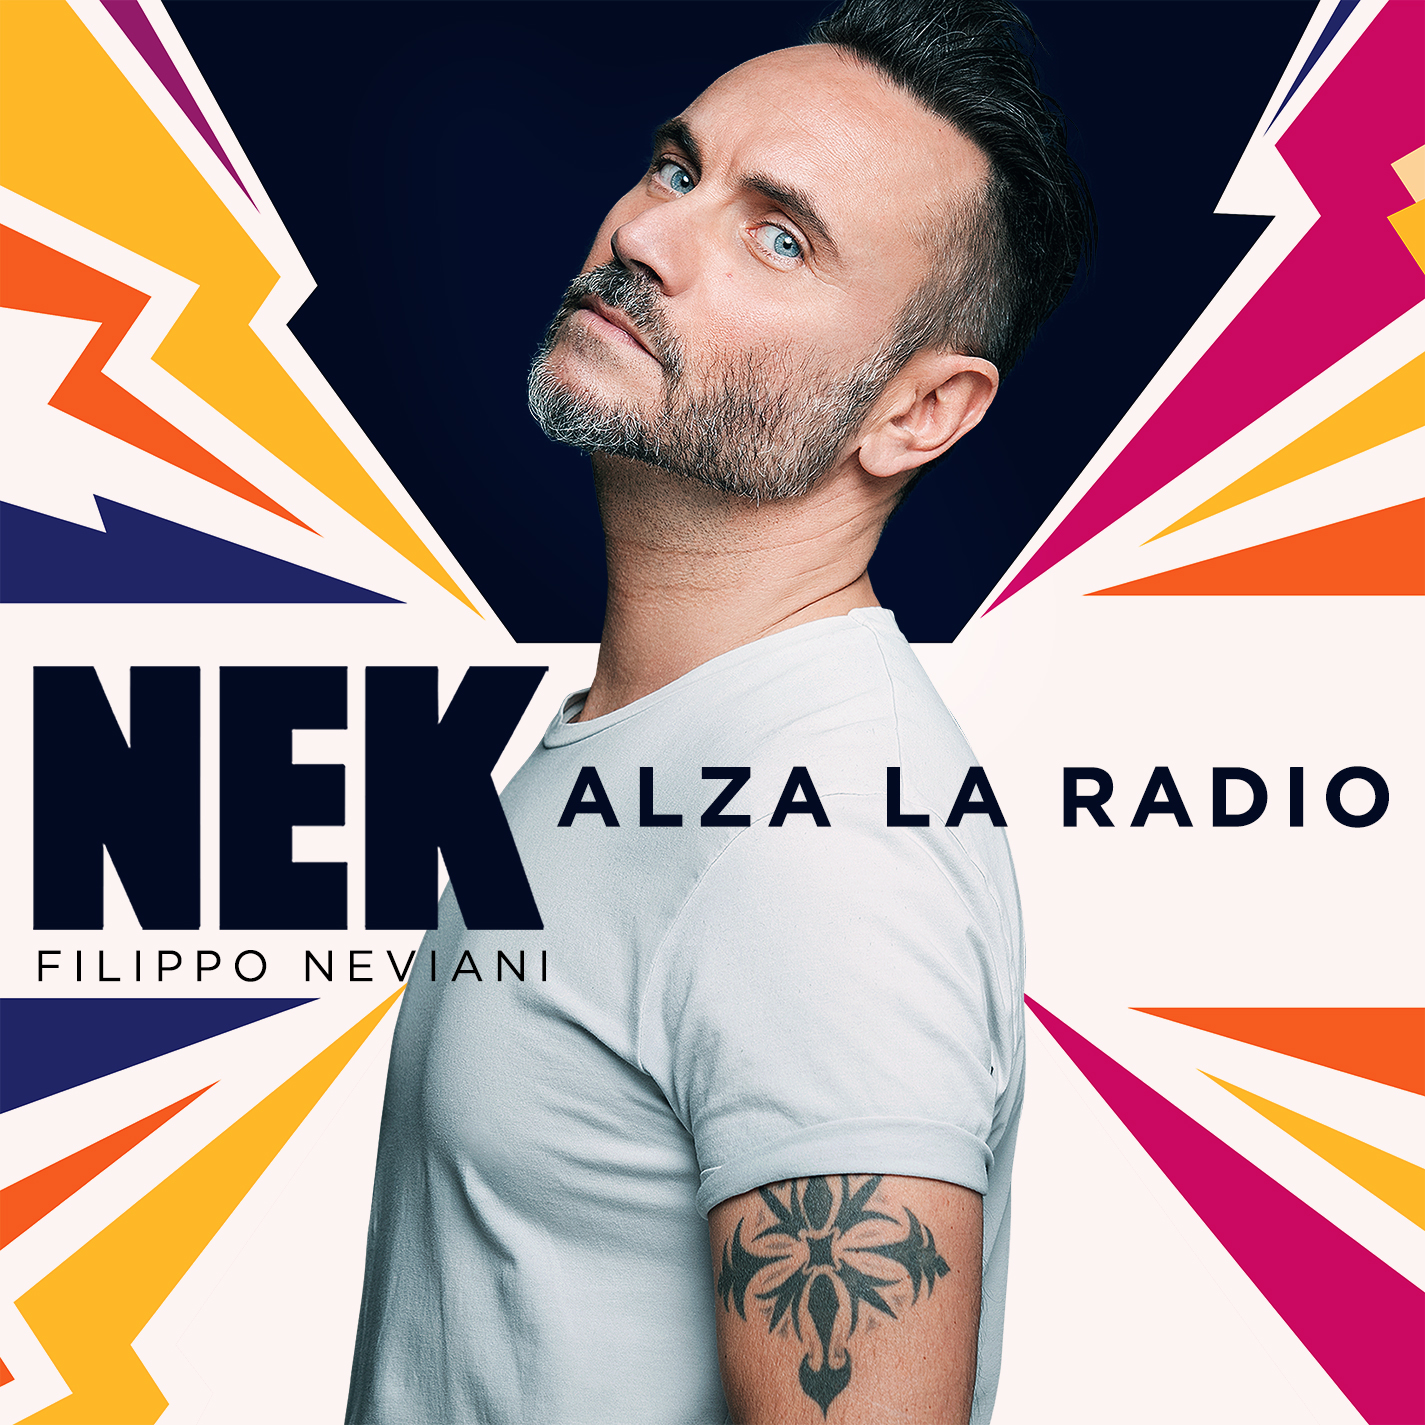 Nek - Alza la radio